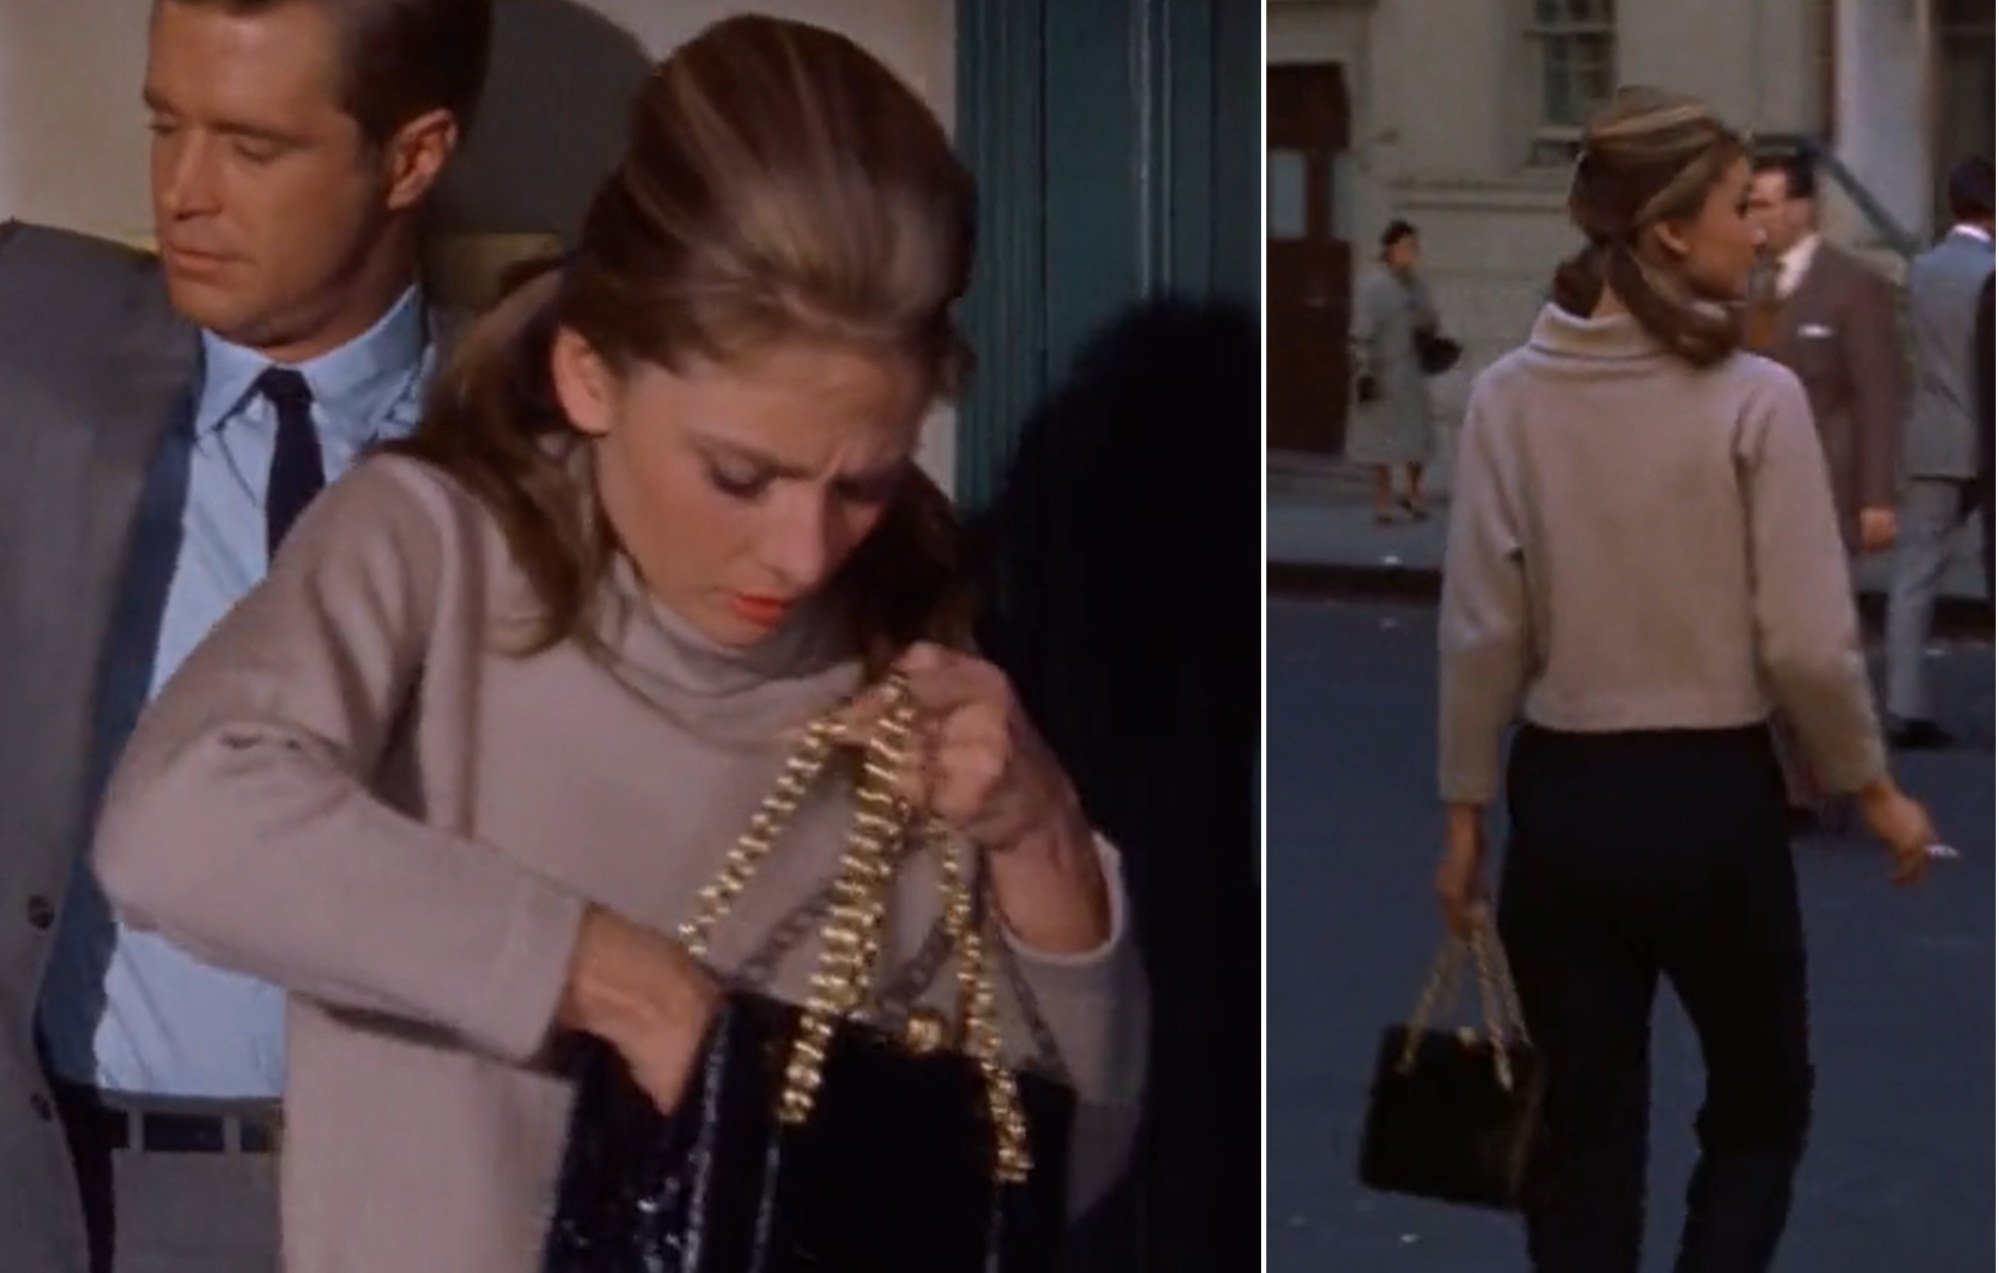 Audrey Hepburn carrying the Louis Vuitton Speedy bag, a timeless